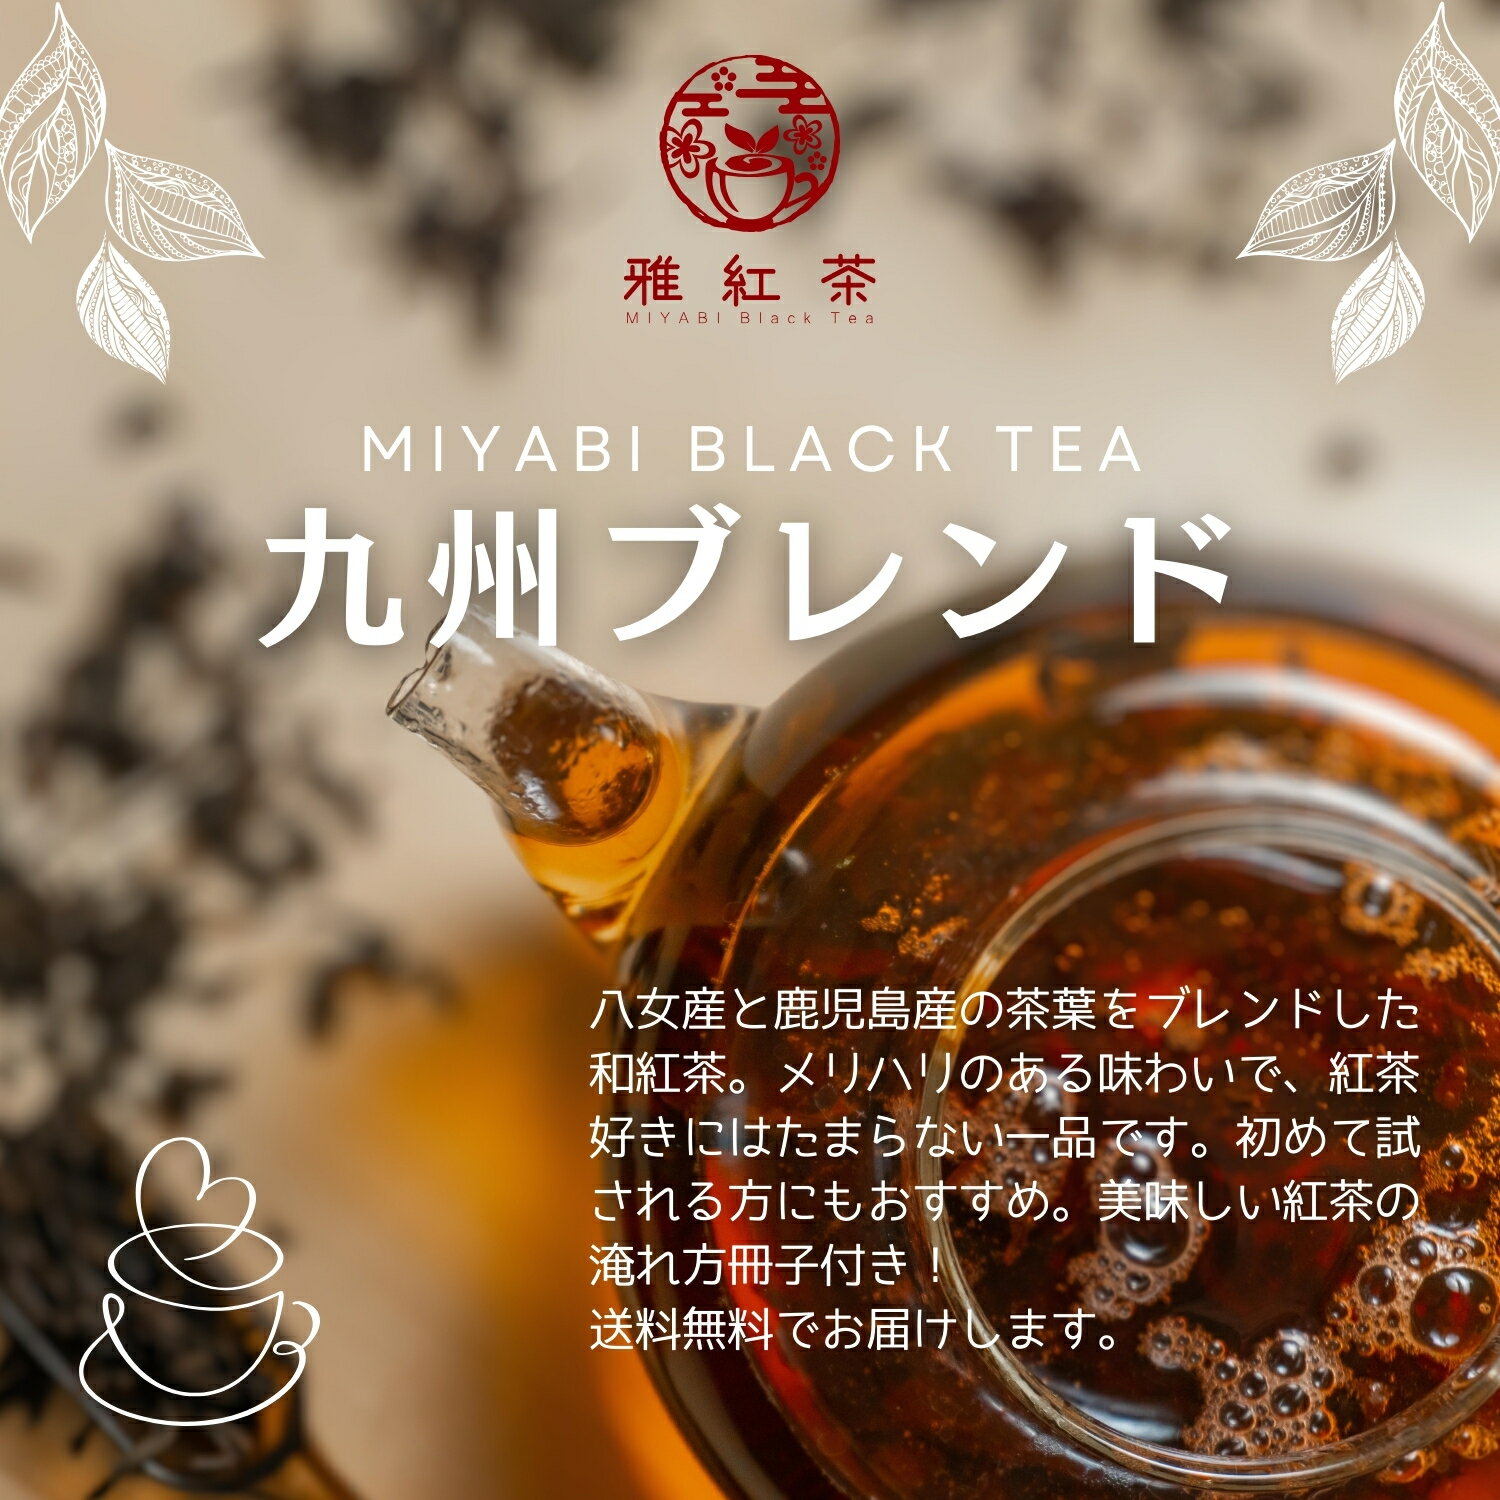 和紅茶 ミルクティー 紅茶 | 雅紅茶 九州ブ...の紹介画像2